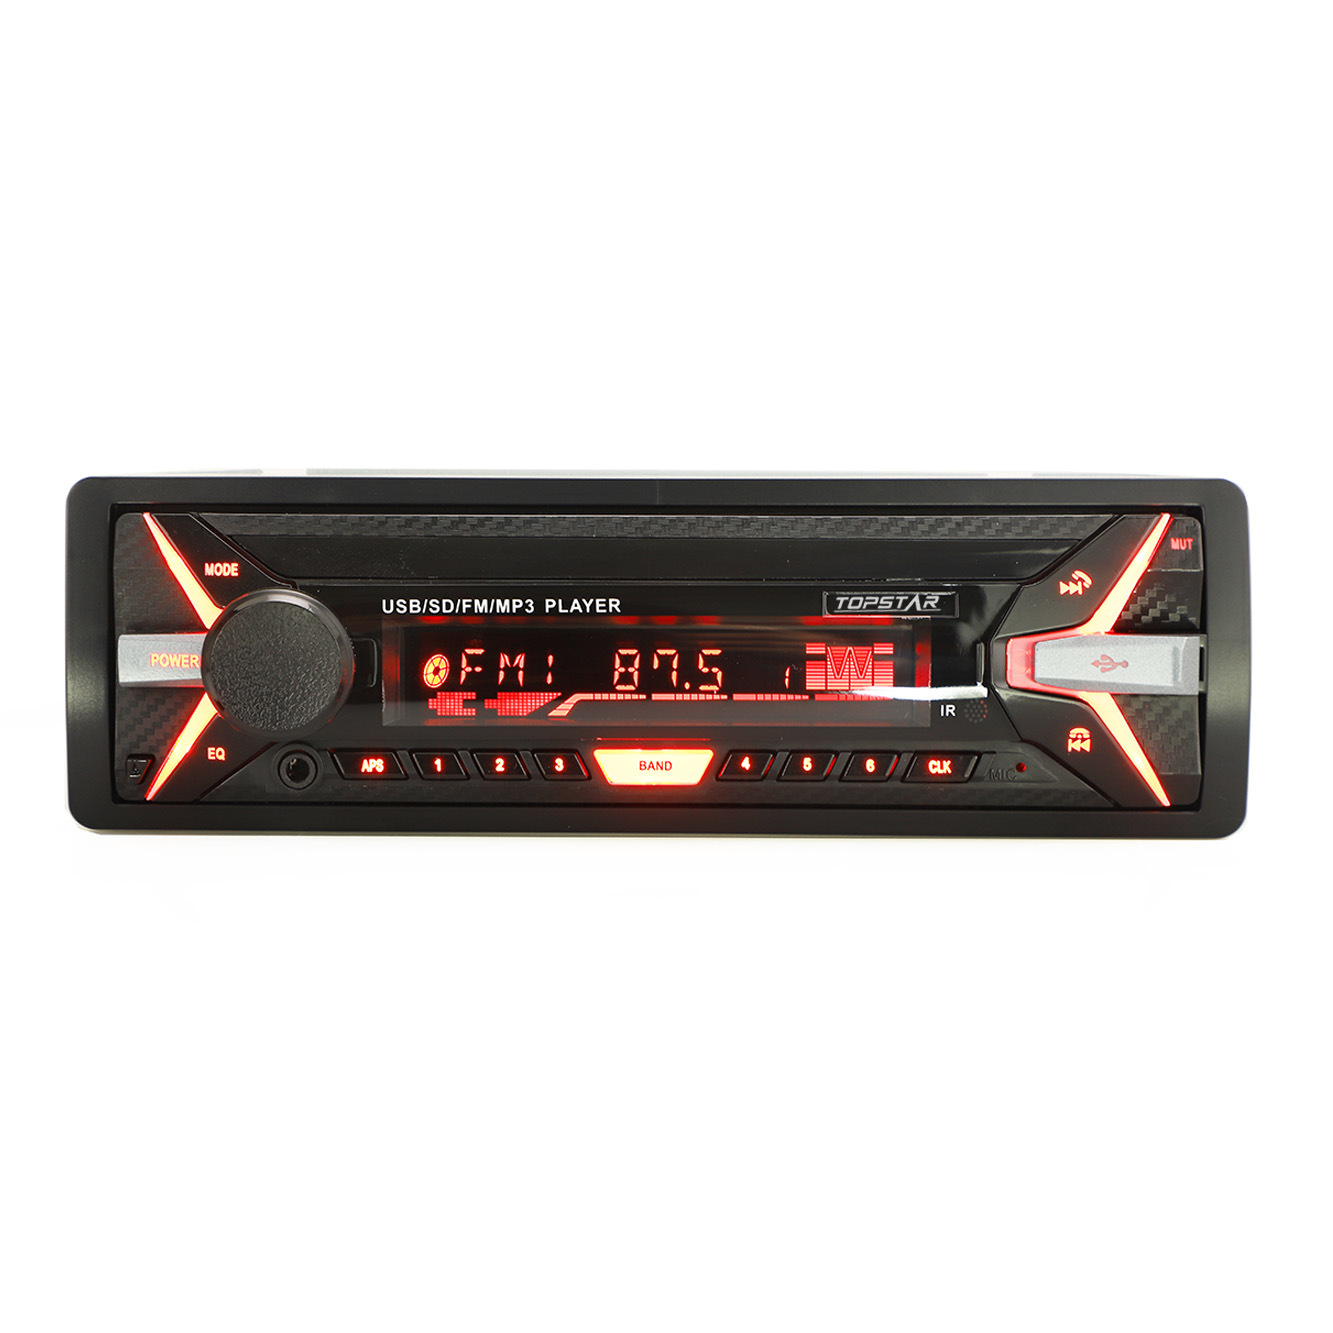 FM الارسال الصوت سيارة MP3 الصوت MP3 على سيارة سيارة الصوت انفصال واحد DIN سيارة مشغل MP3